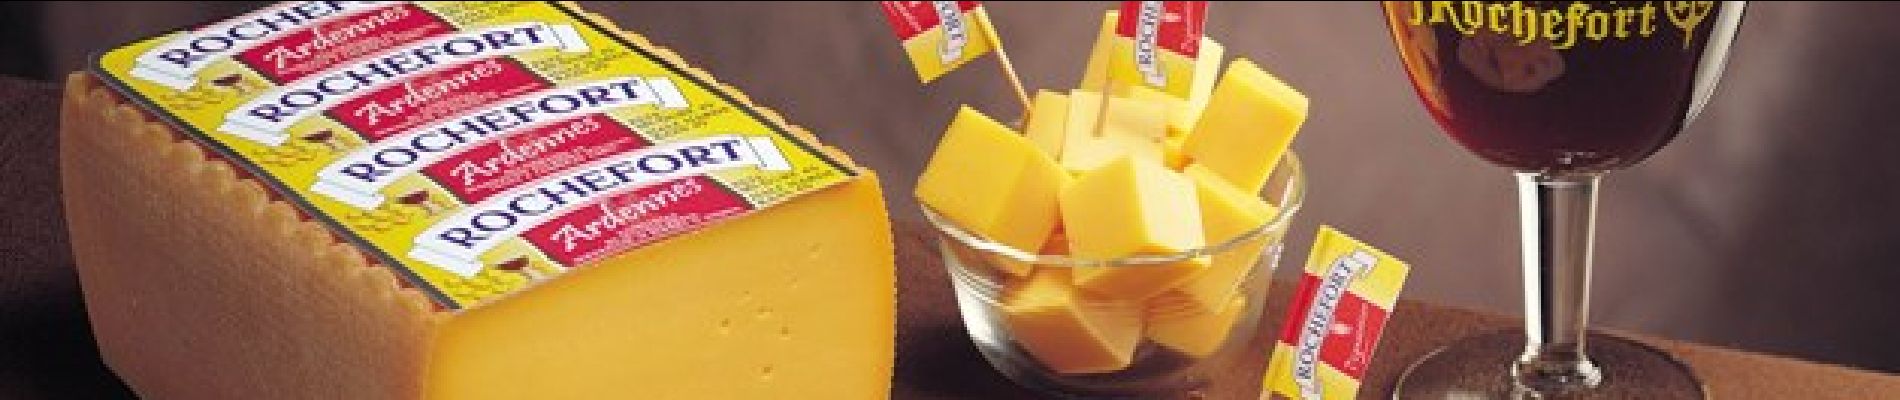 POI Rochefort - Rochefort cheese - Photo